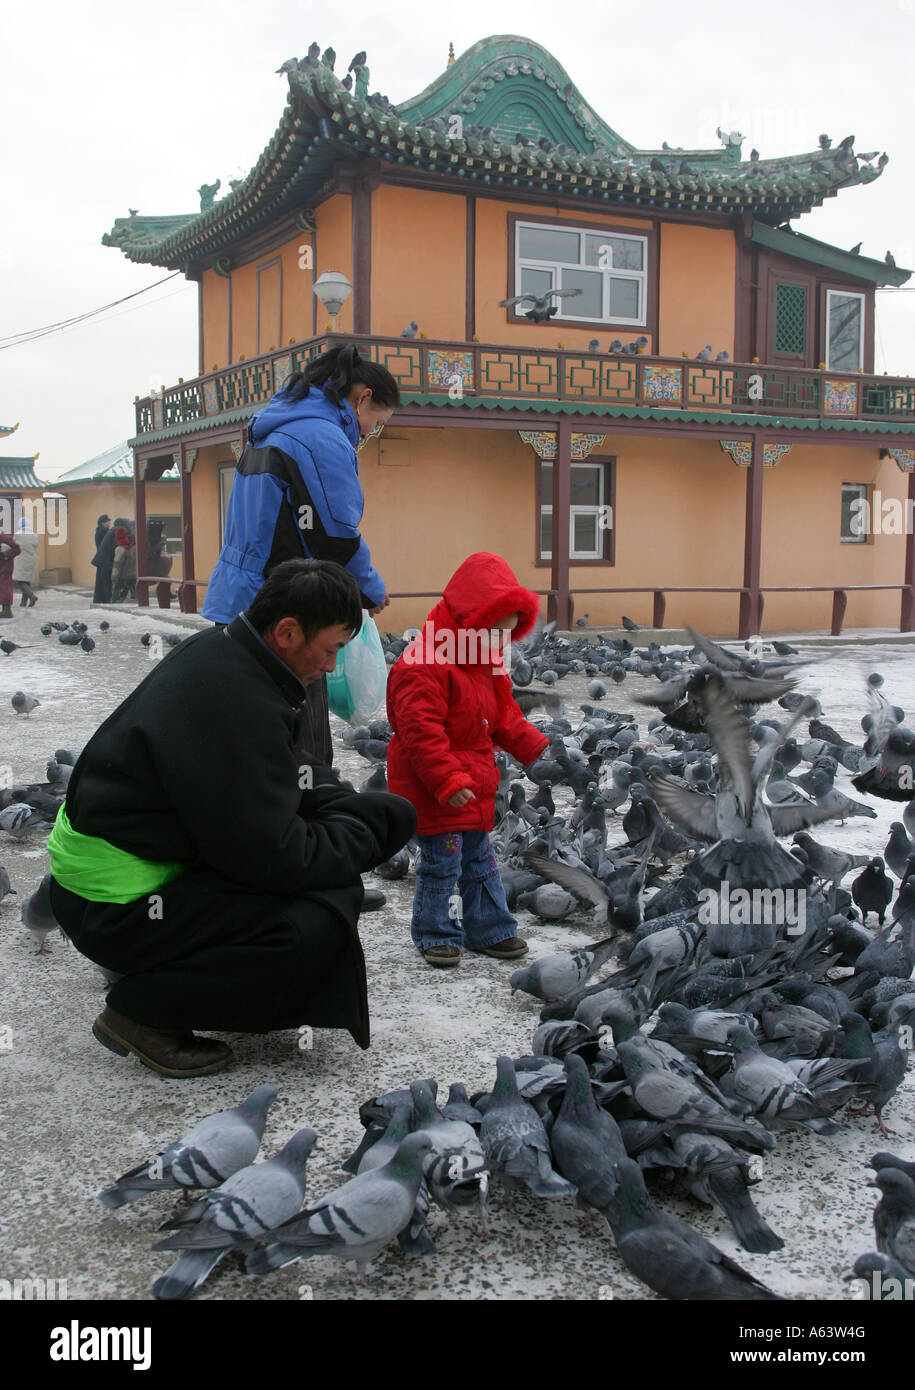 La Mongolie, le moine bouddhiste se nourrit les pigeons dans le monastère bouddhiste Gandantegchenling, Ulaan Bataar Banque D'Images